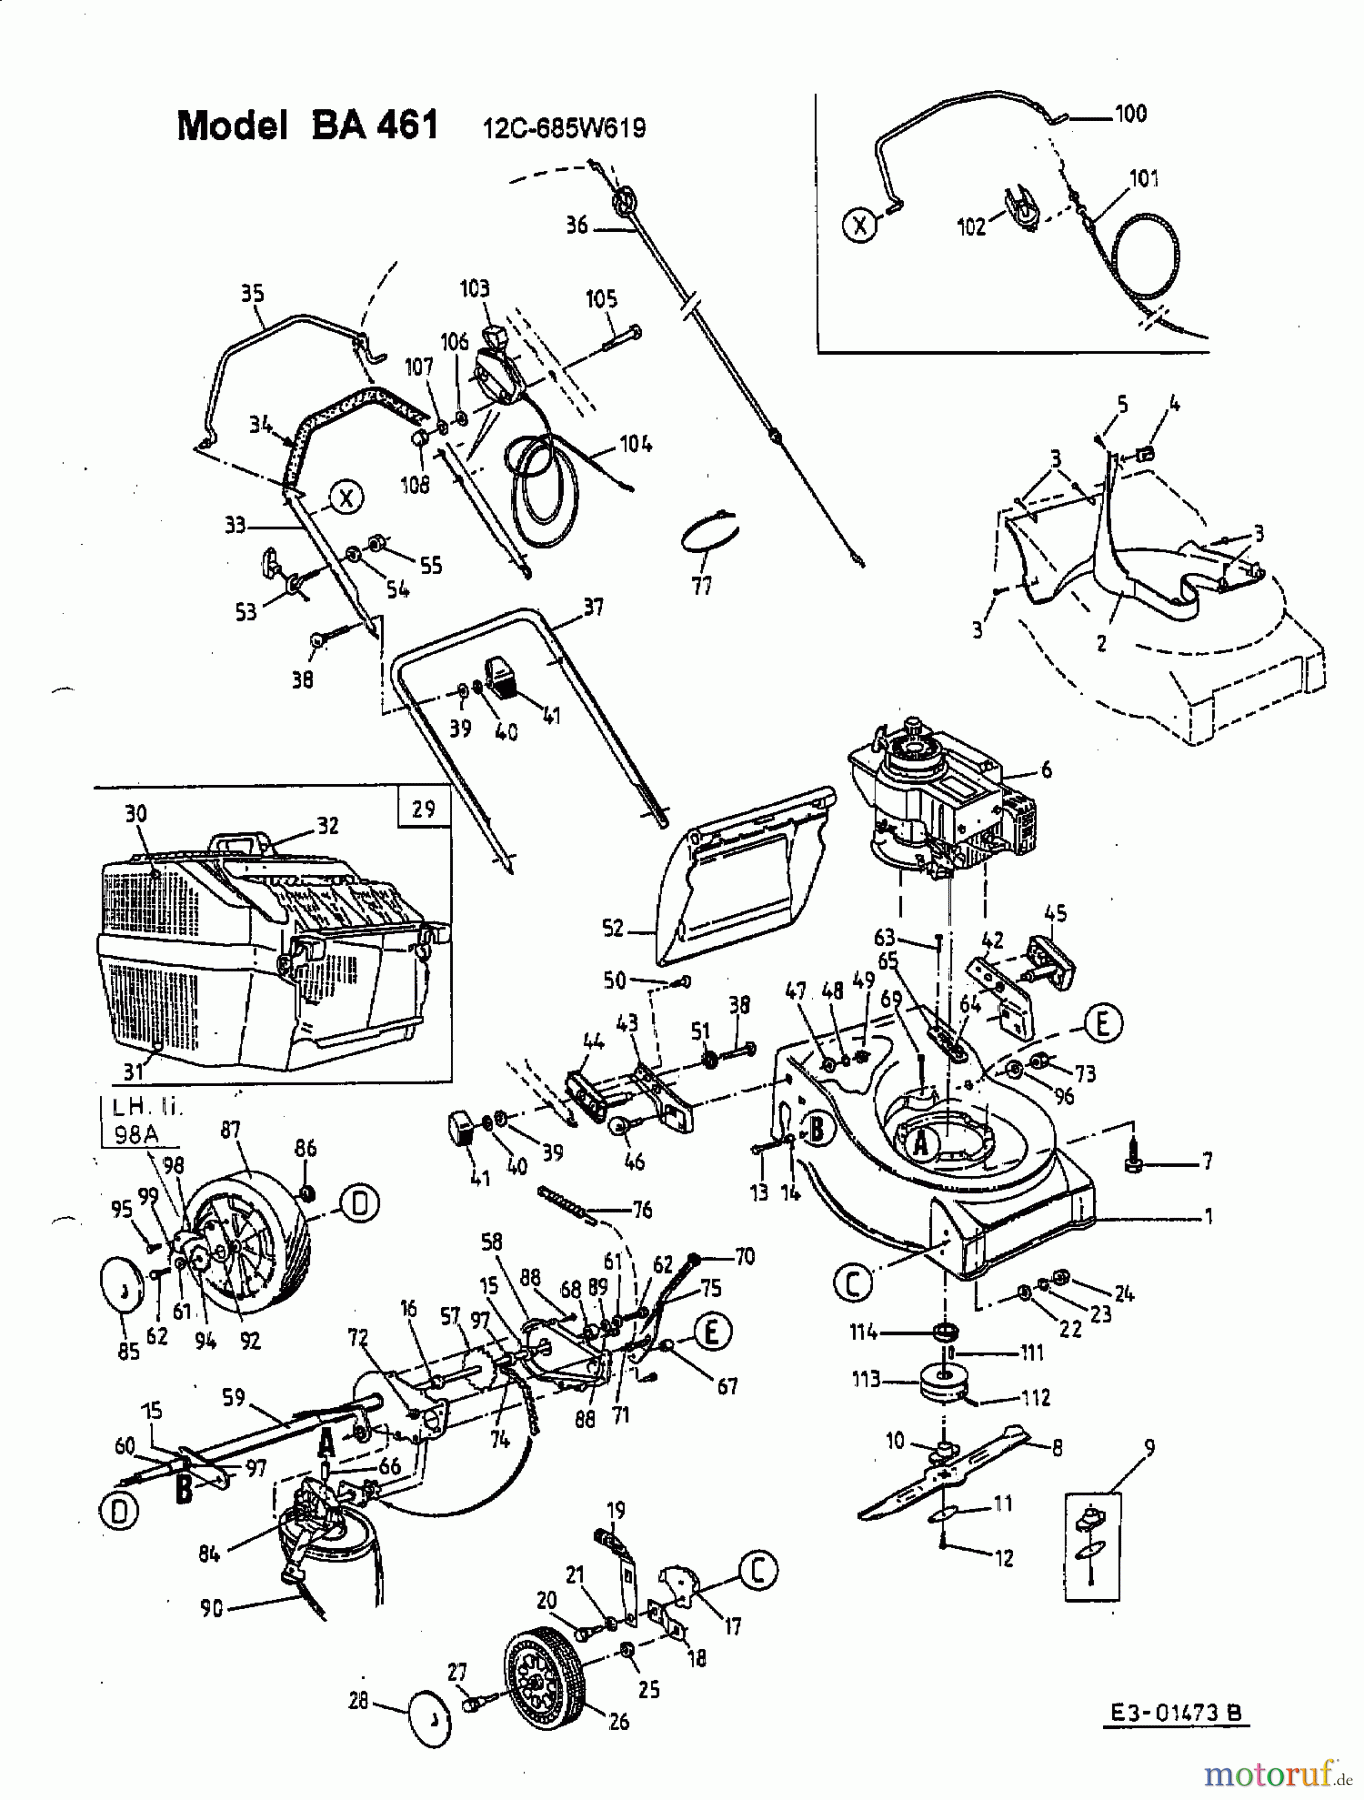  Fleurelle Motormäher mit Antrieb BA 461 12C-685W619  (2001) Grundgerät